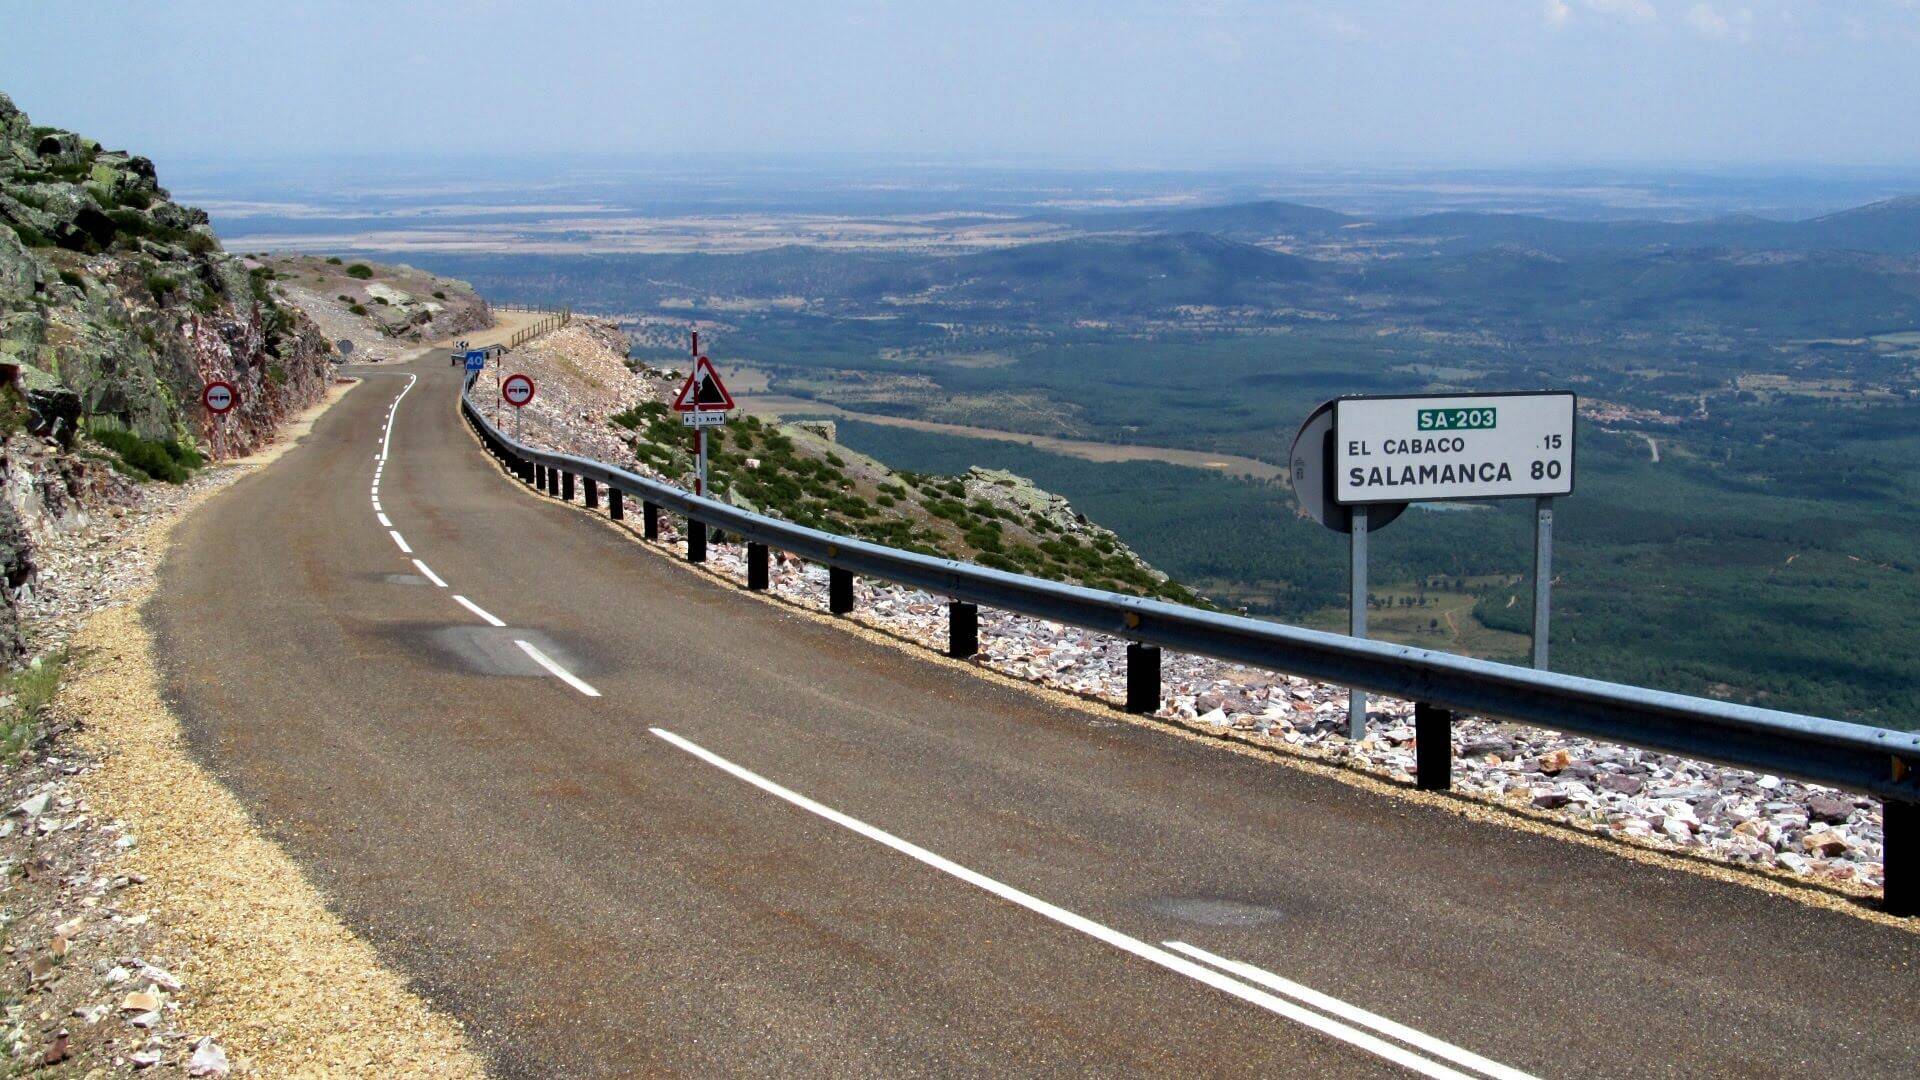 Аренда авто в испании — 2021. советы и отзывы